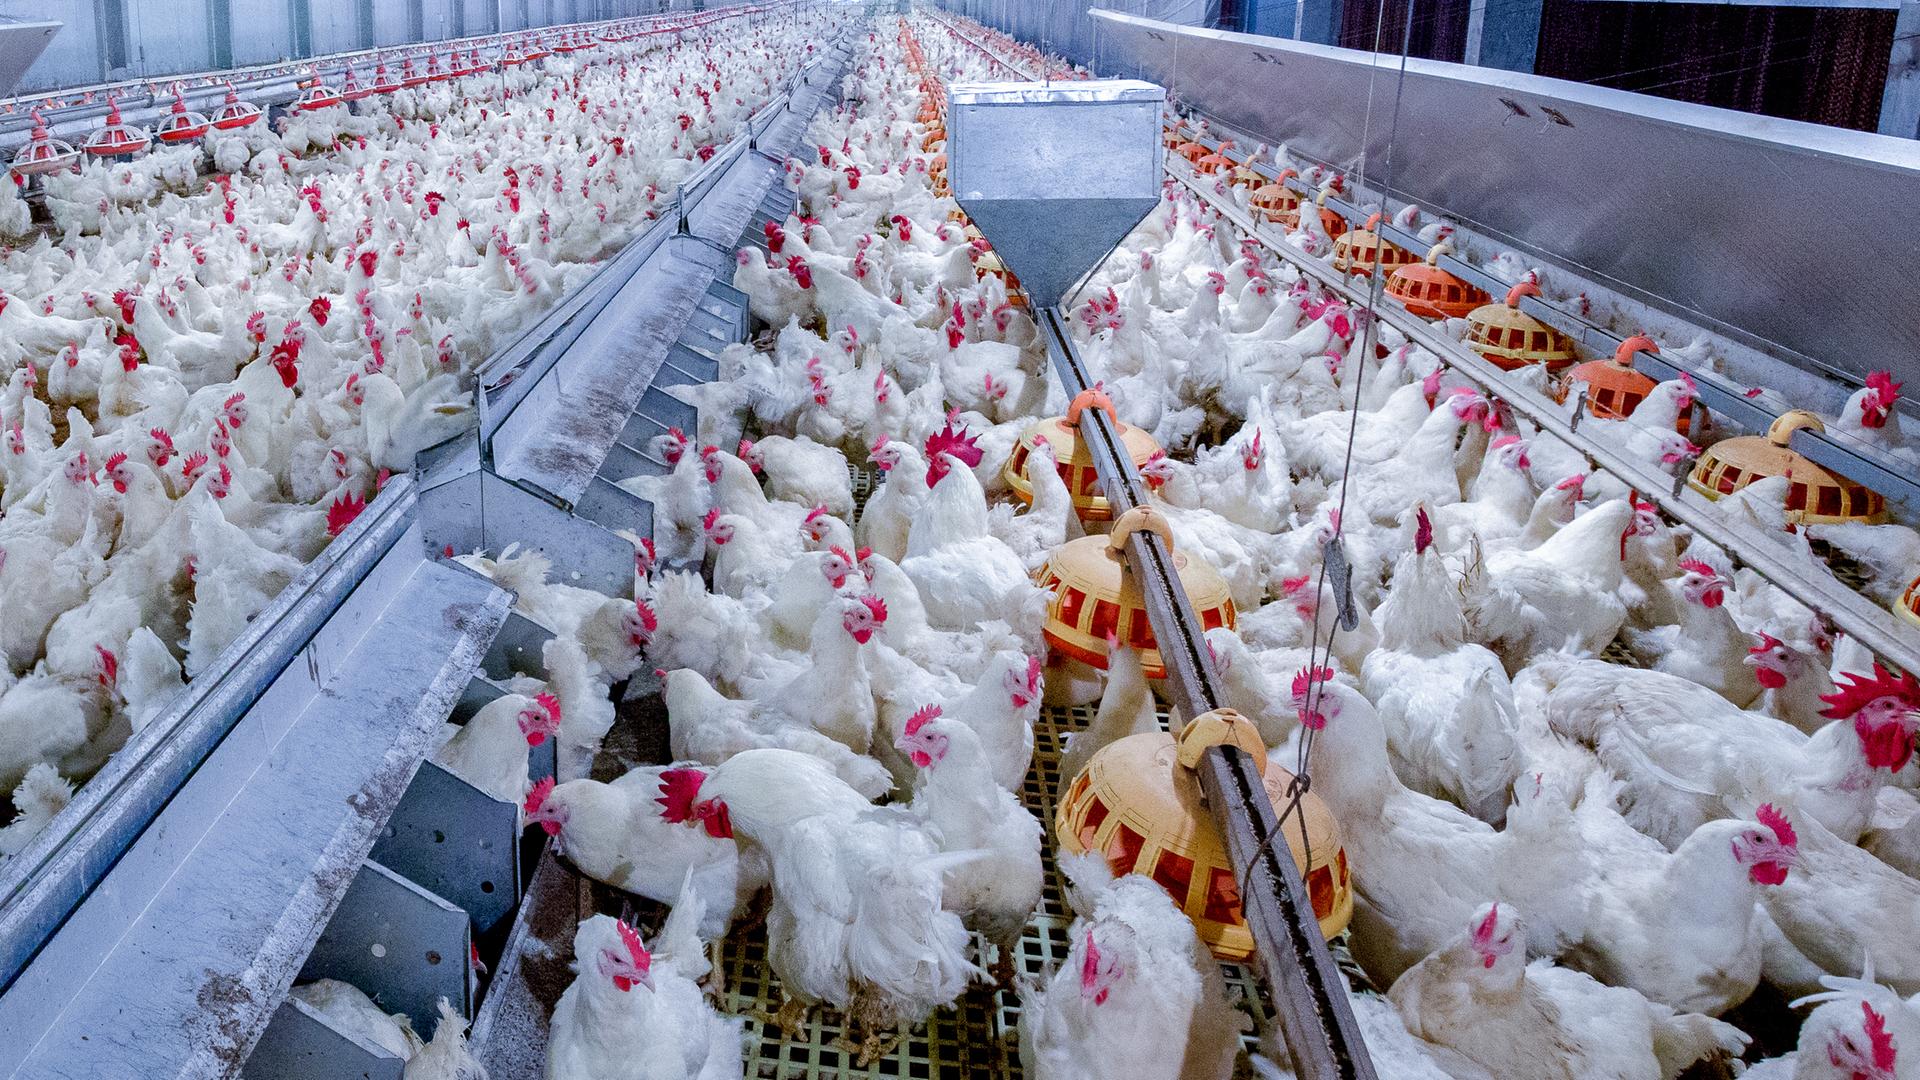 Geflügelfarm mit Hühnern. Zu sehen sind viele lebende Hühner für die Fleisch- und Eierproduktion in einer industriellen Halle.